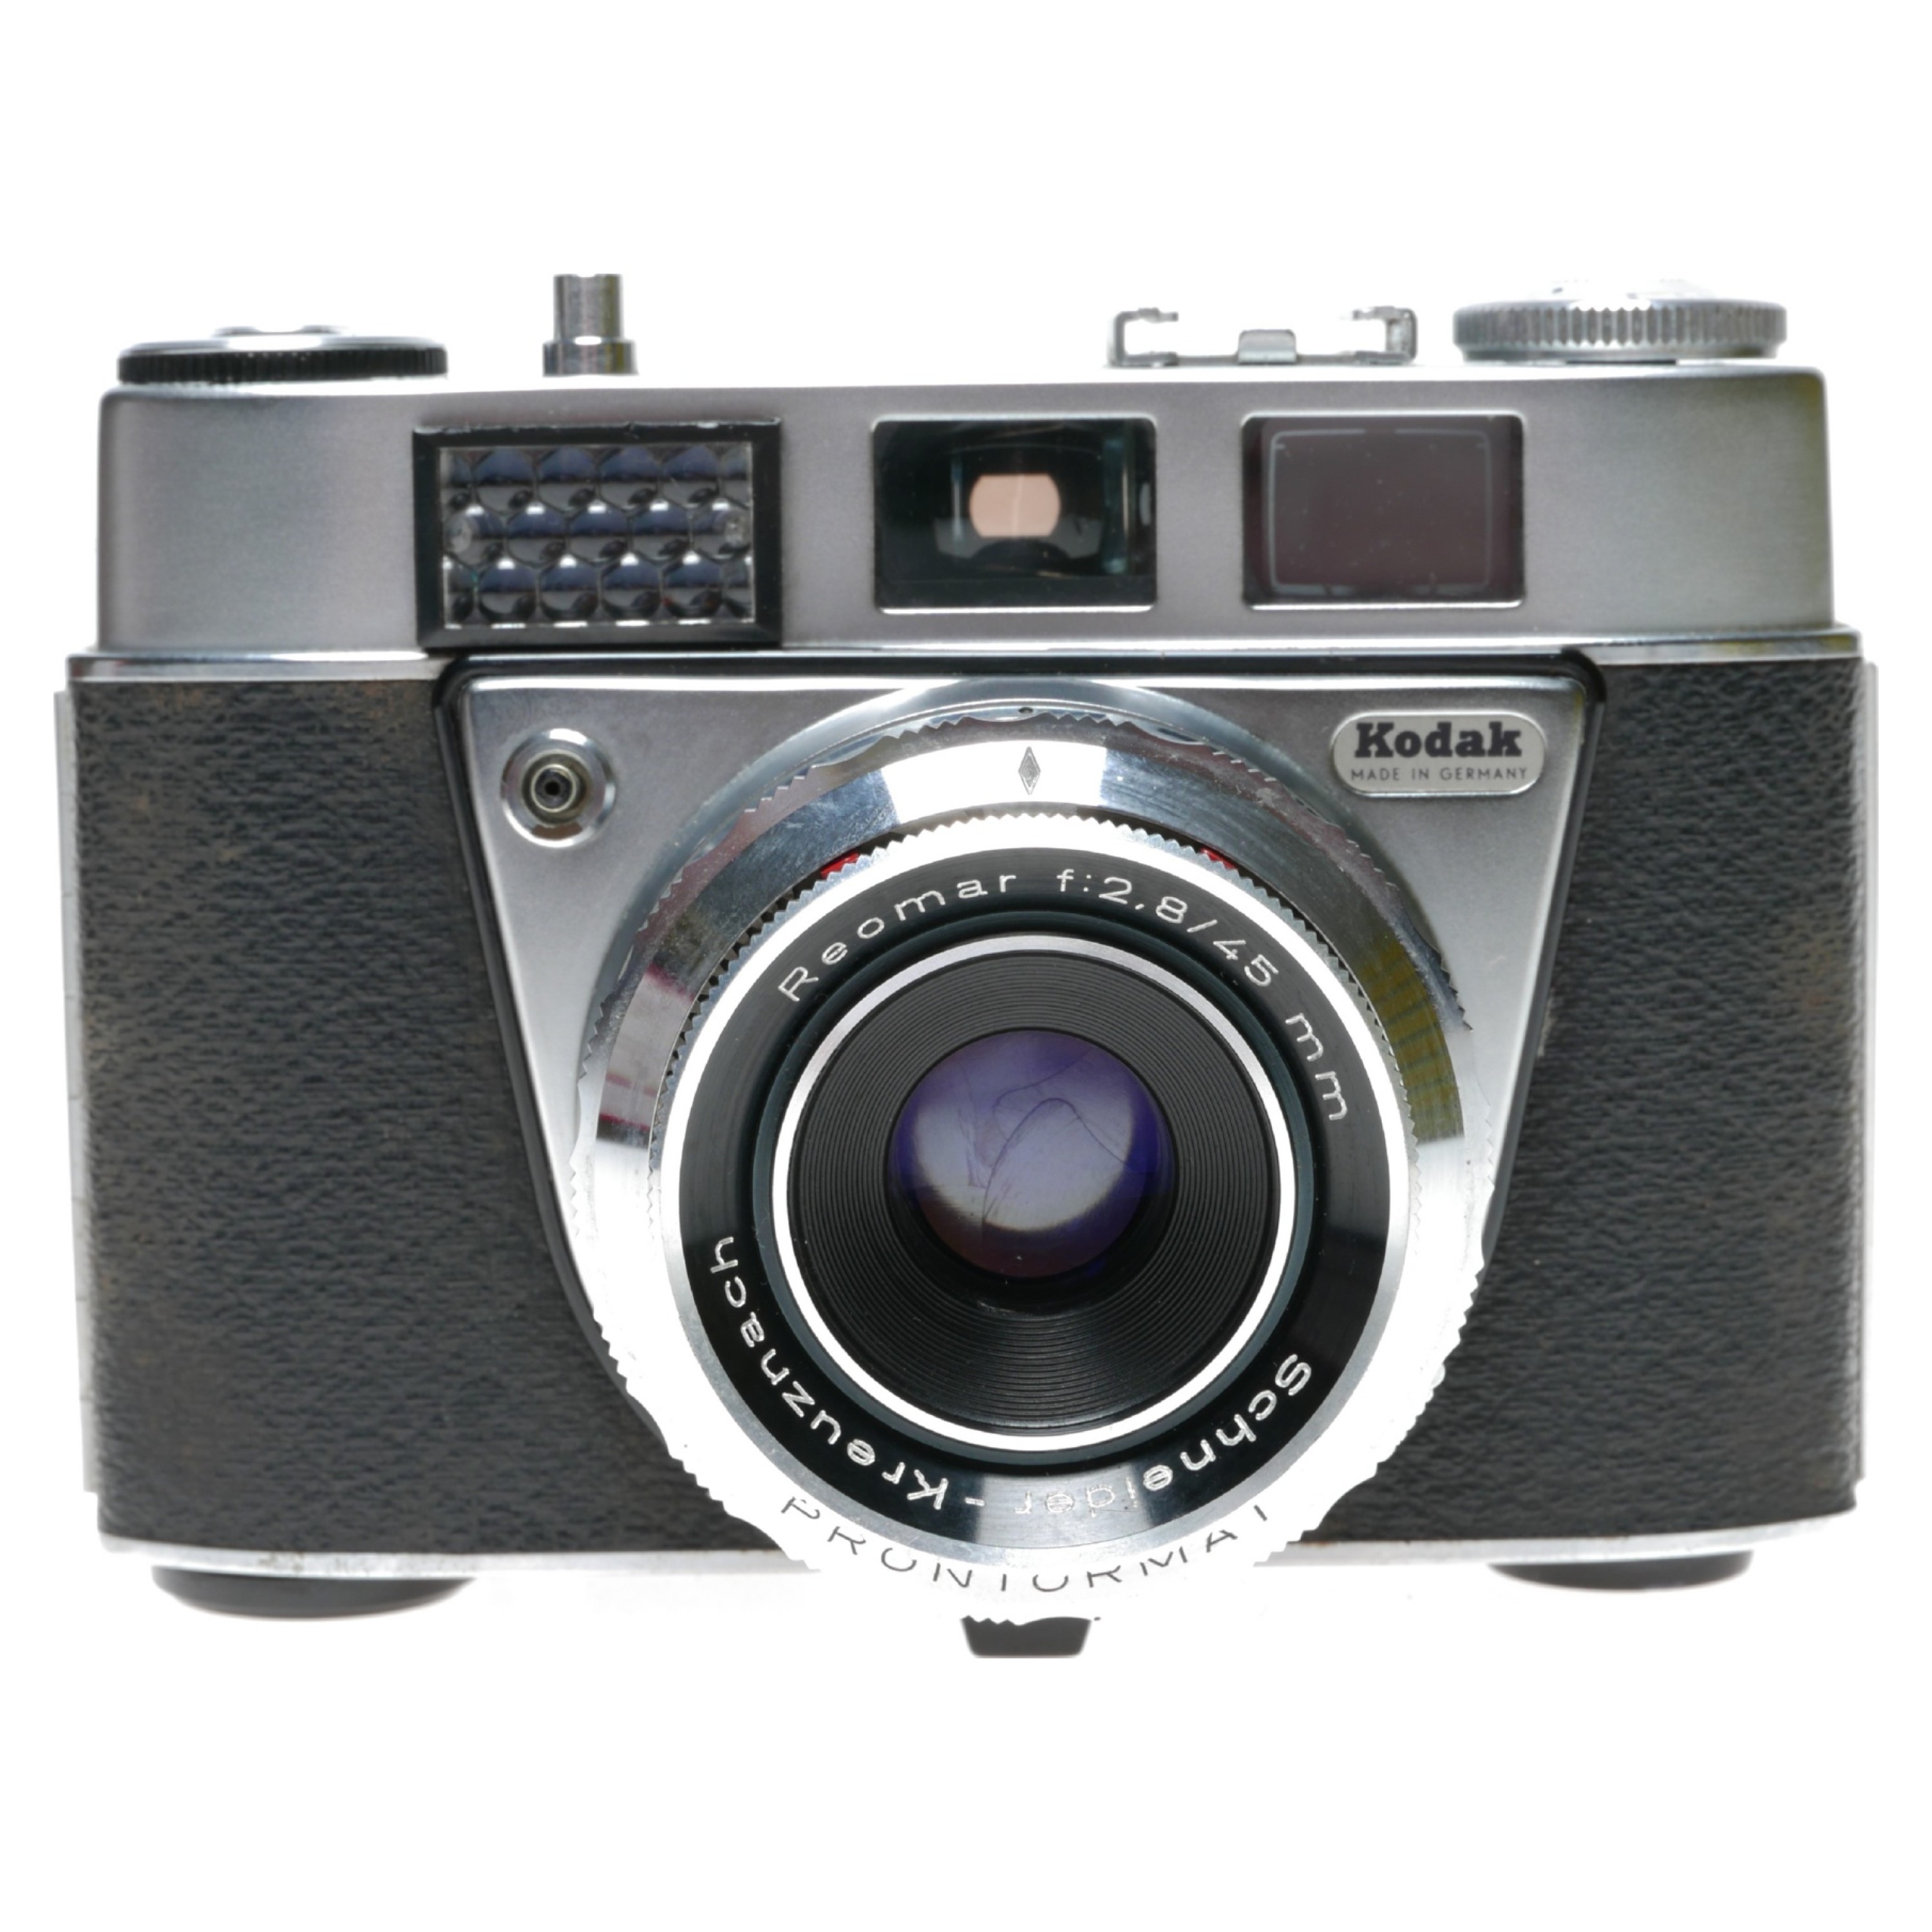 Kodak Retinette 1B コンパクトフィルムカメラ ドイツ製 - フィルムカメラ